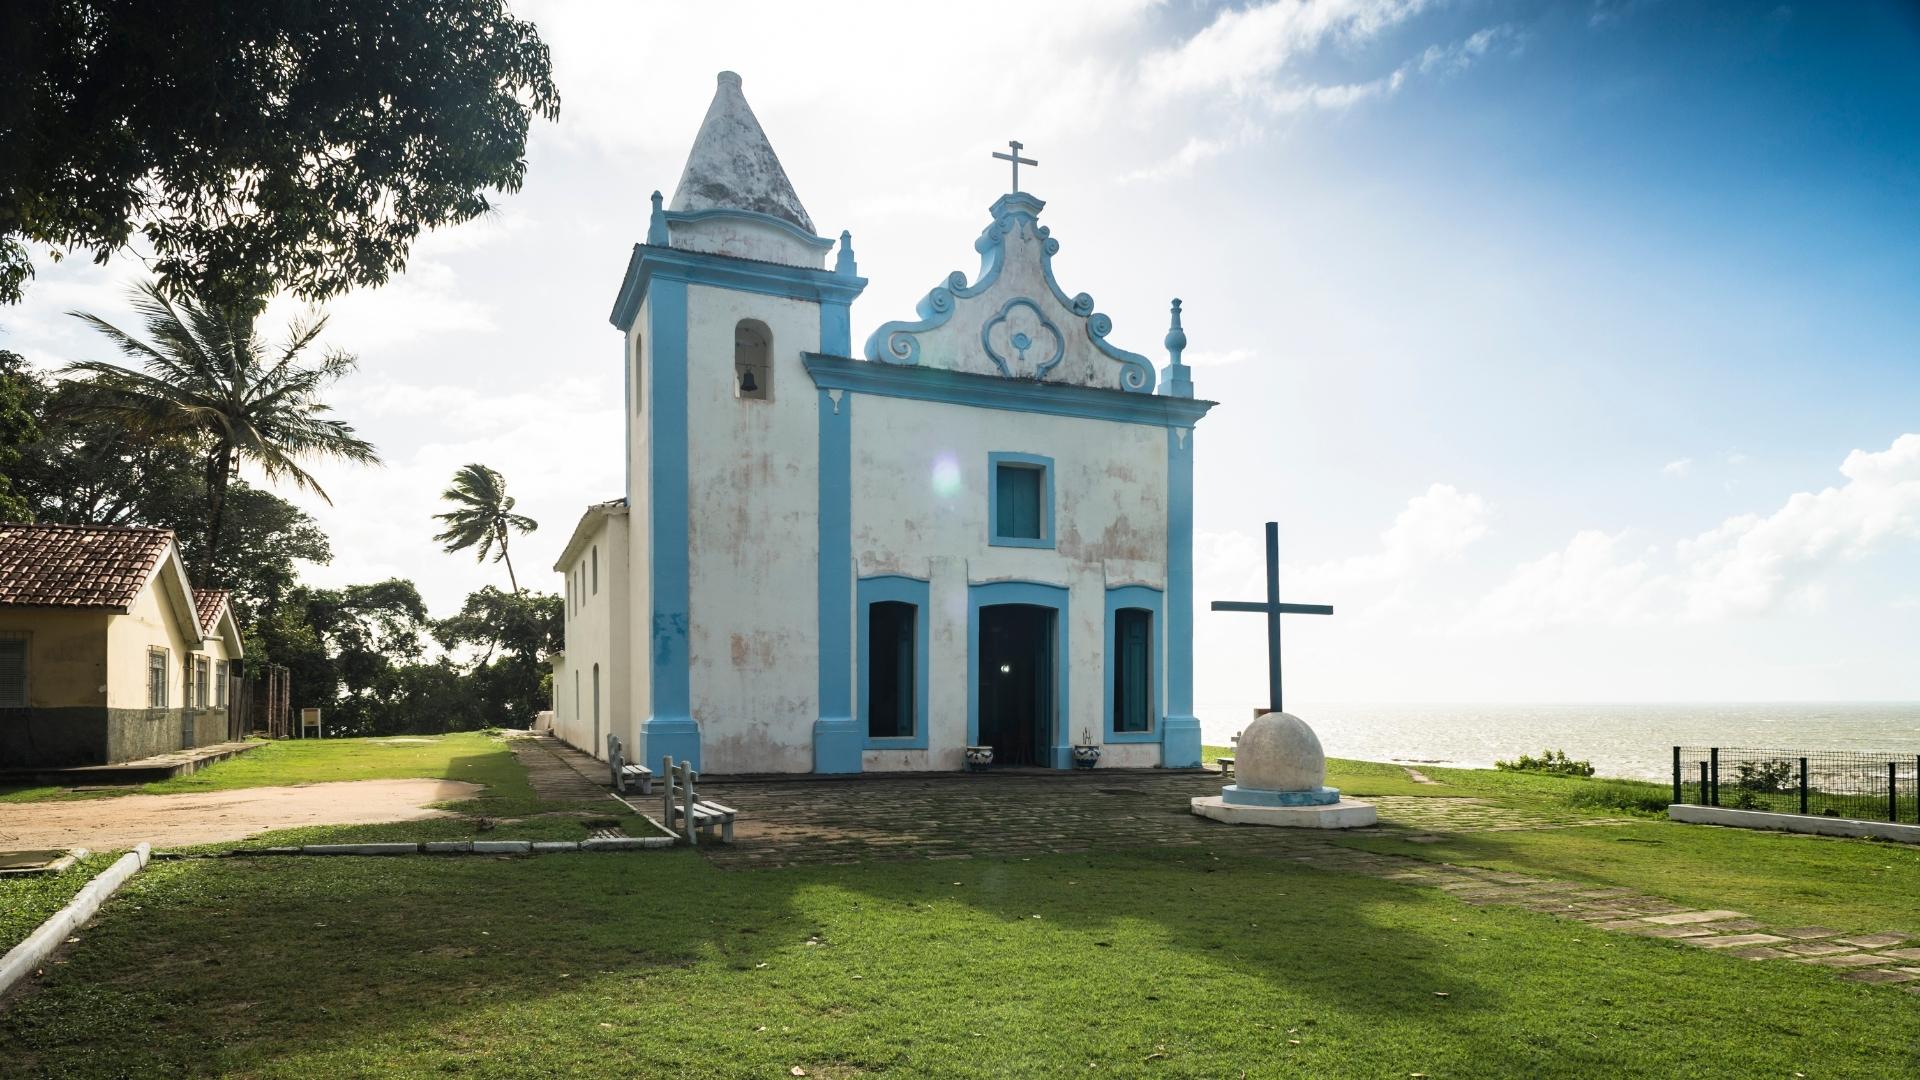 Rede Bem Bahia de hotéis em Porto Seguro oferece valores imperdíveis para uma viagem inesquecível | Igreja histórica de Santa Cruz de Cabrália | Conexão123